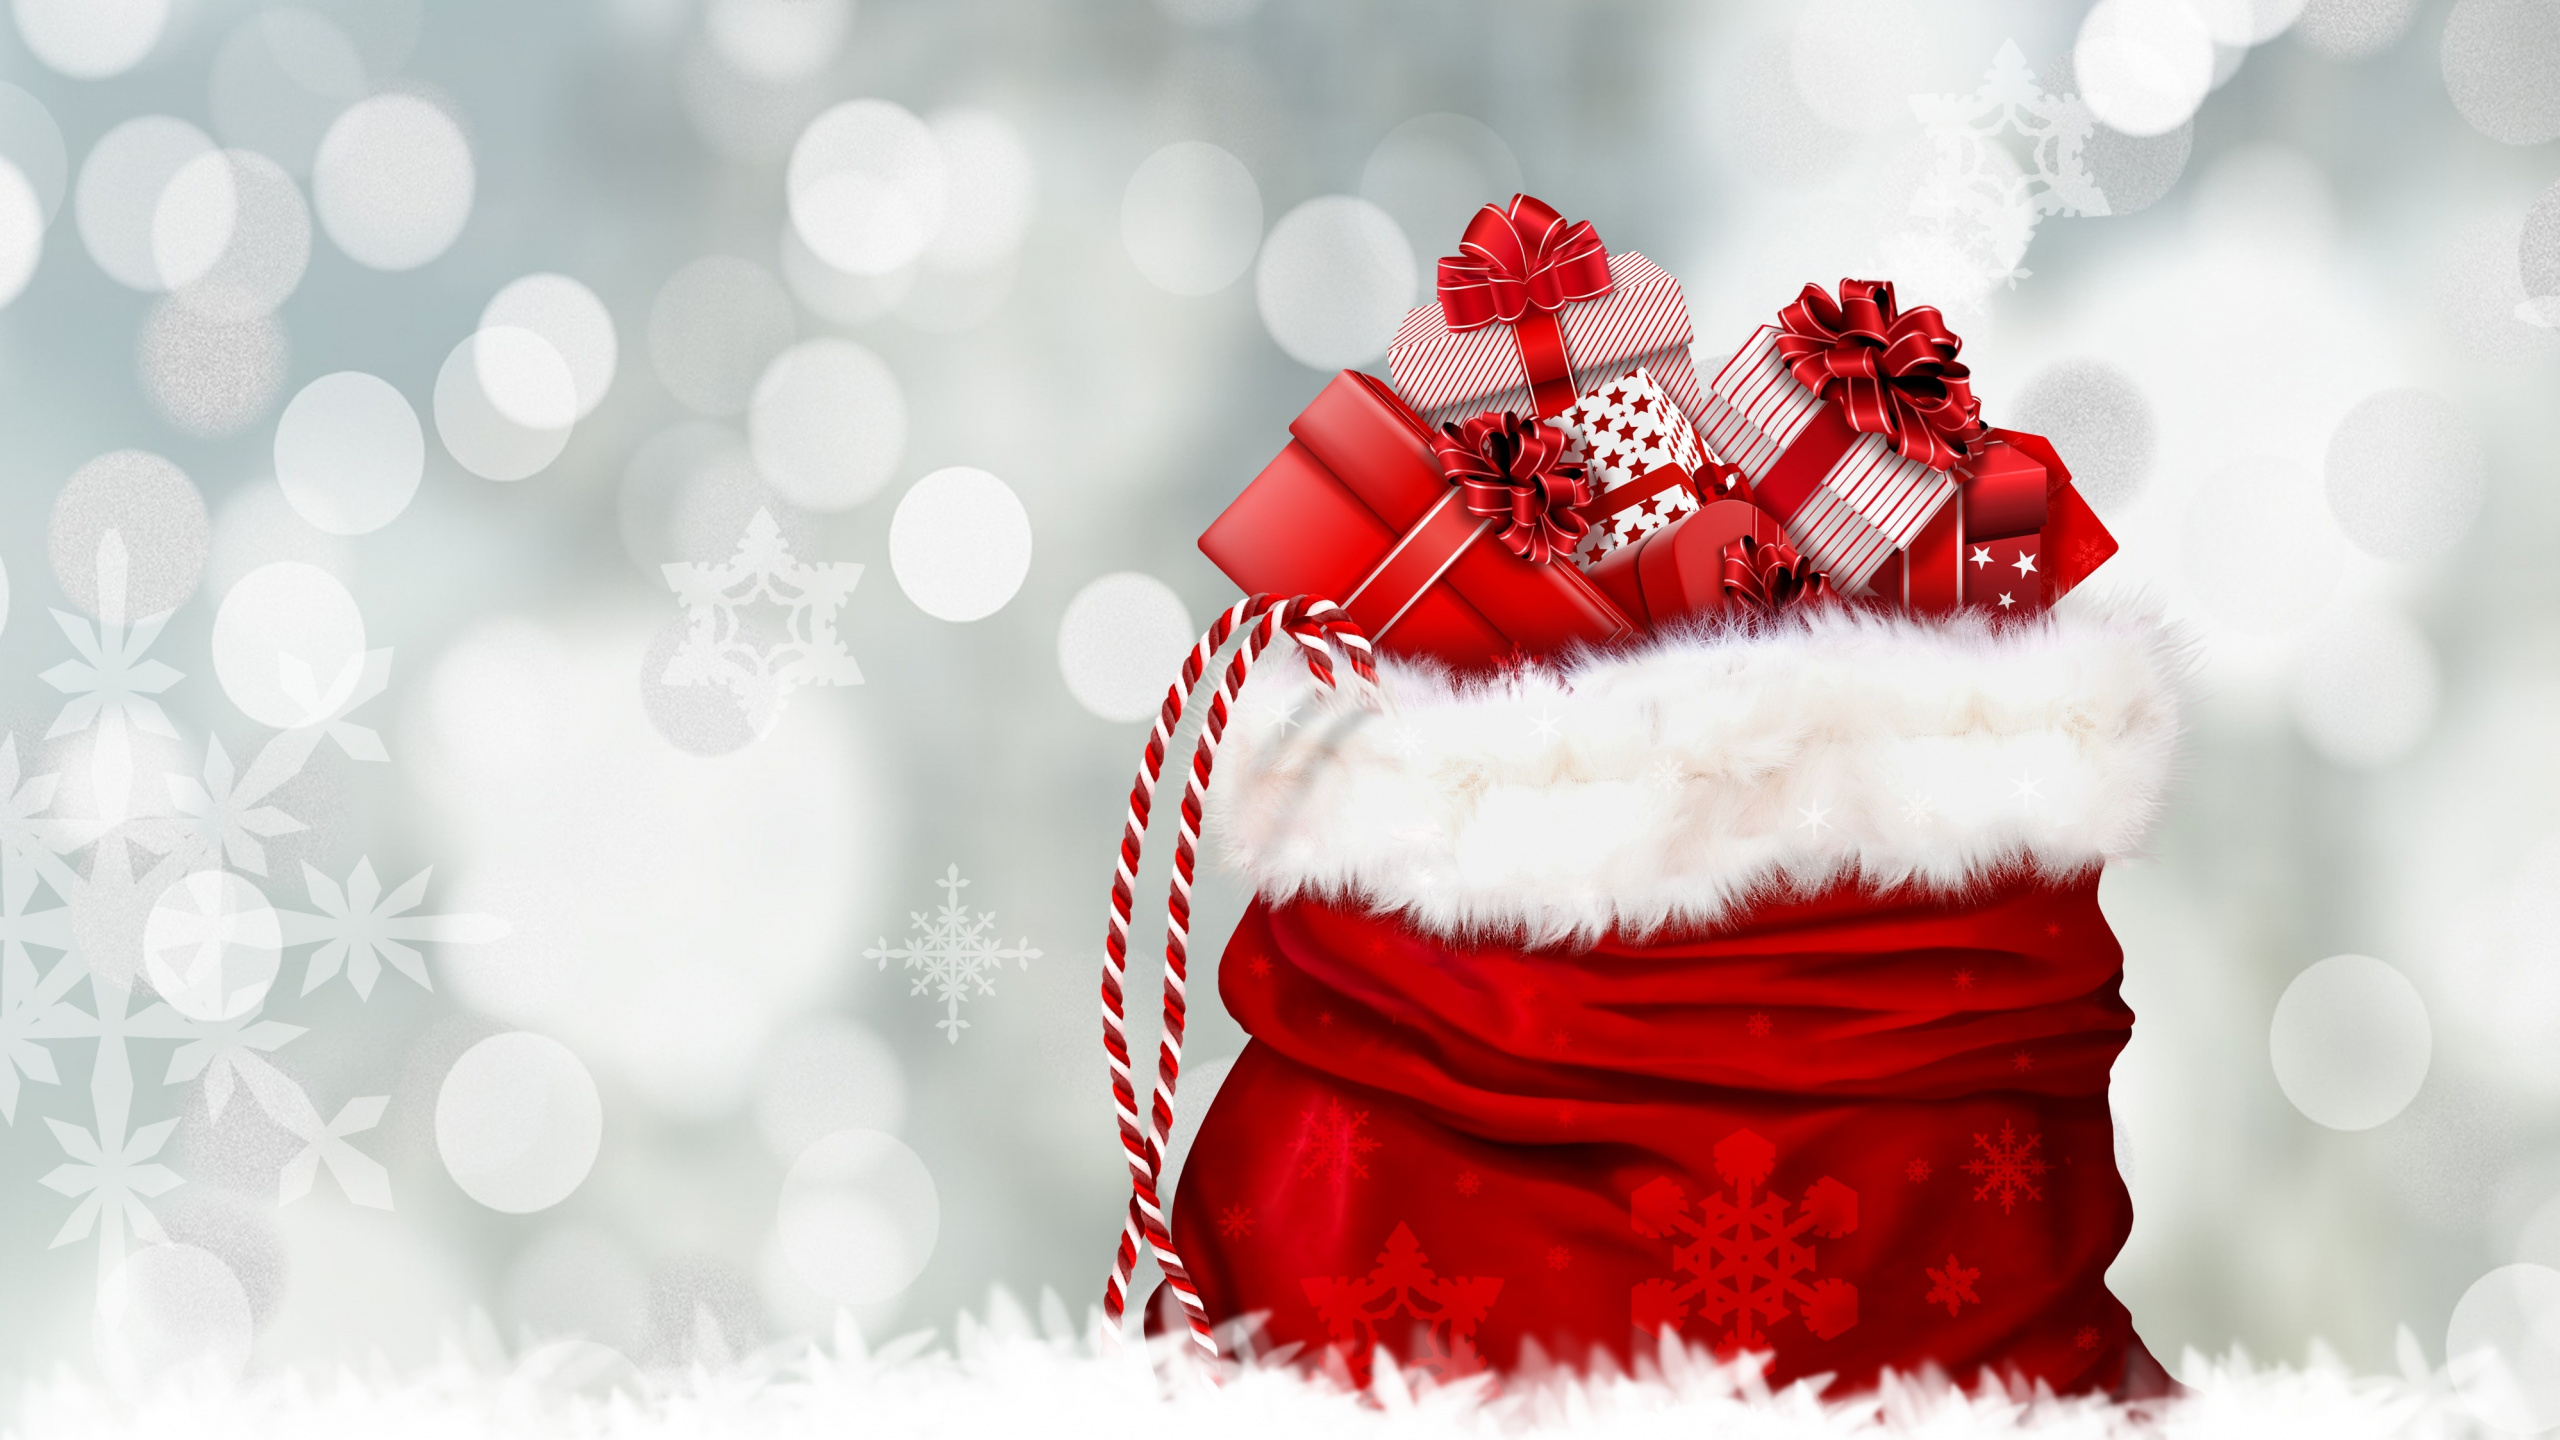 Le Jour De Noël, Santa Claus, Cadeau de Noël, Red, Hiver. Wallpaper in 2560x1440 Resolution